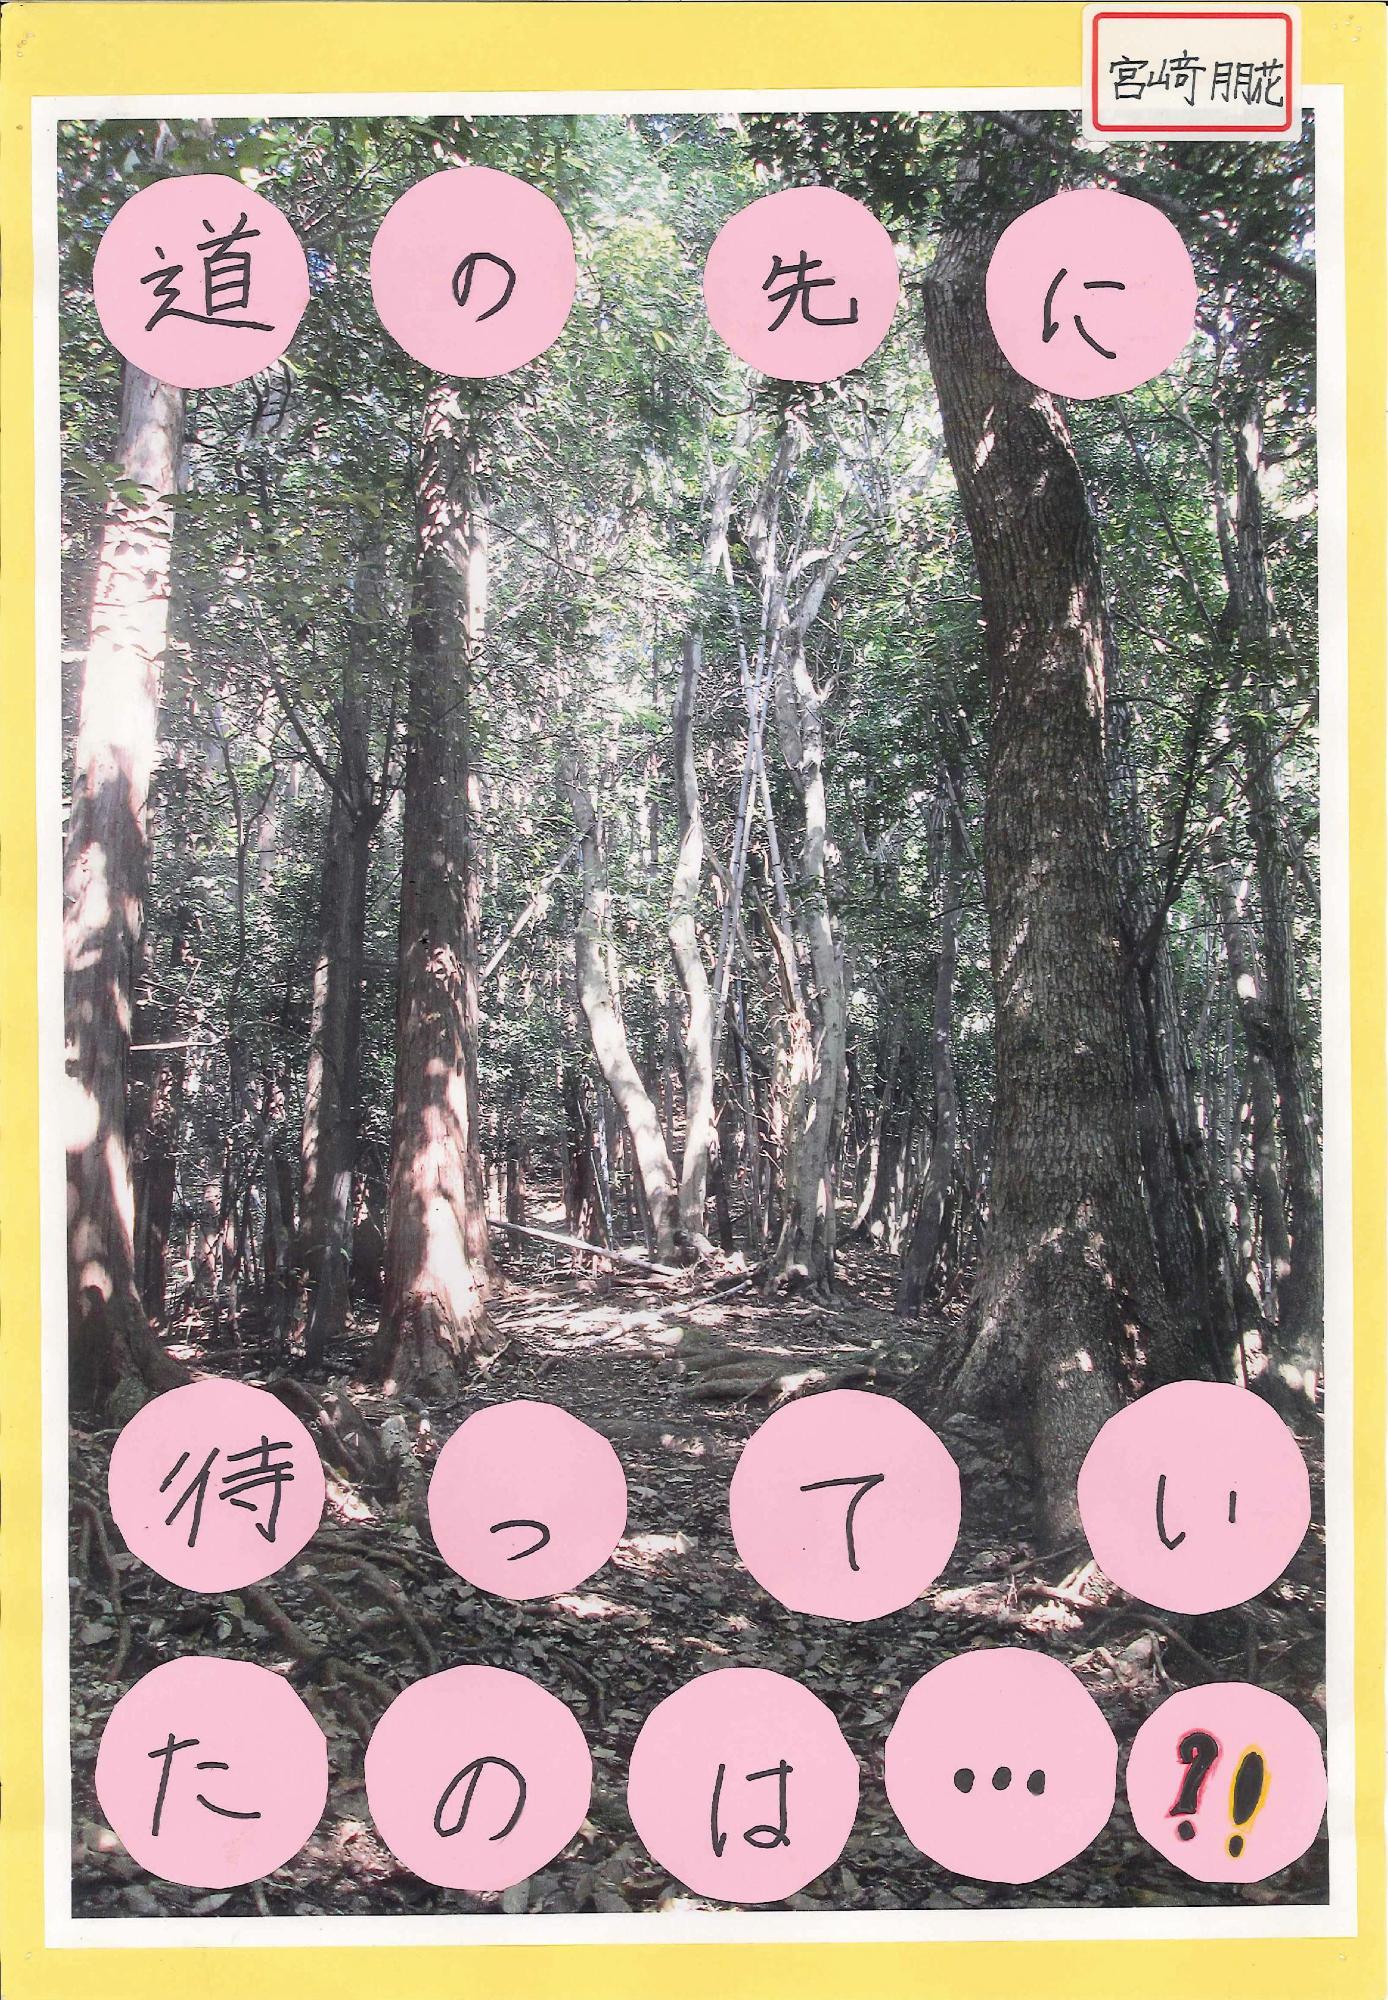 木々や草が生い茂る山道の写真に「道の先に待っていたのは…⁈」というキャッチコピーが書かれたポスターの写真